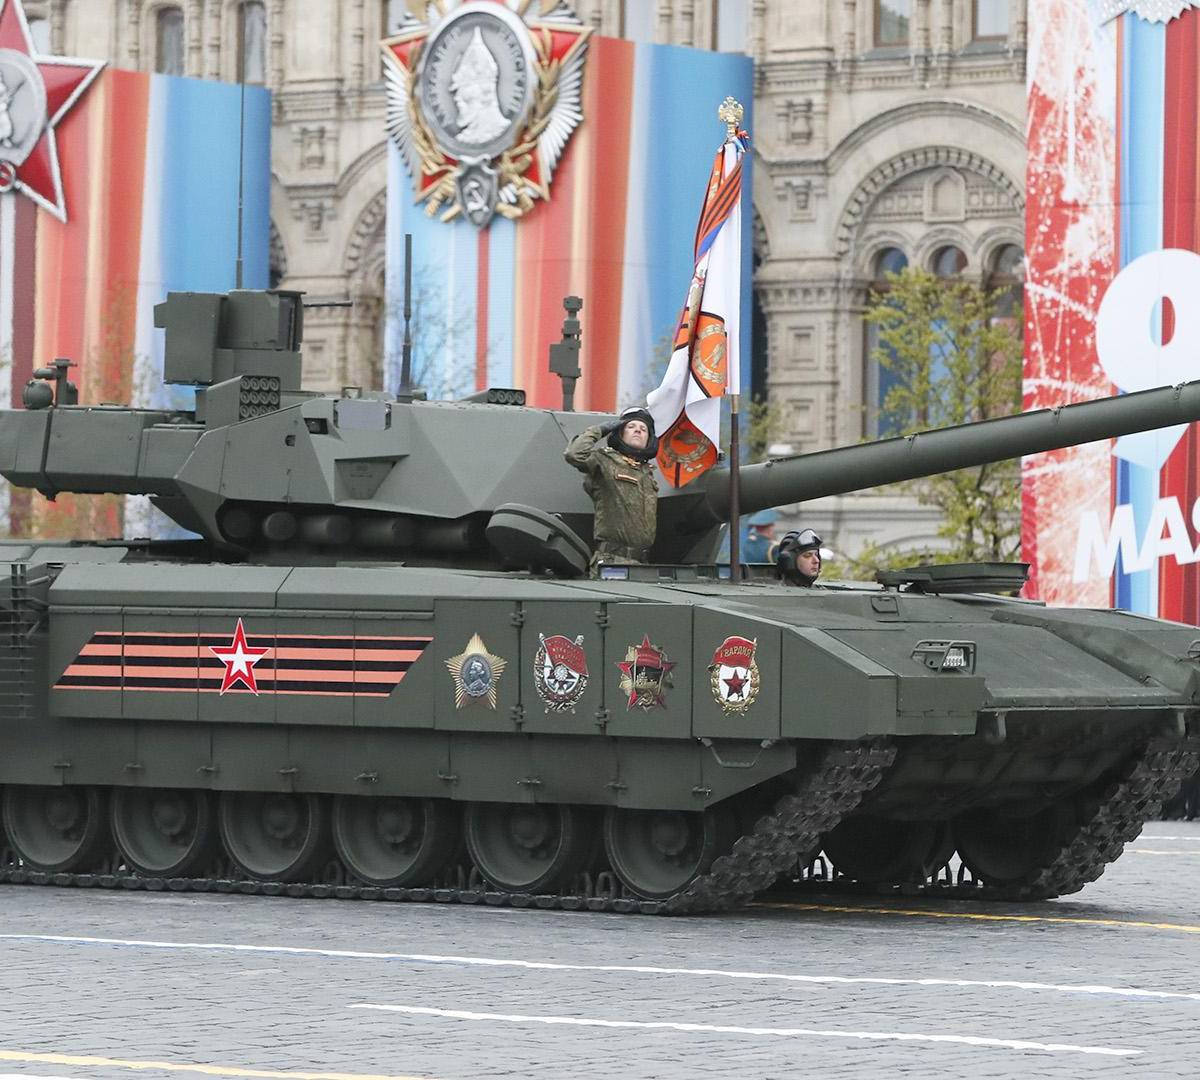 Соперник для «Арматы»: Какой танк противопоставит НАТО российскому?